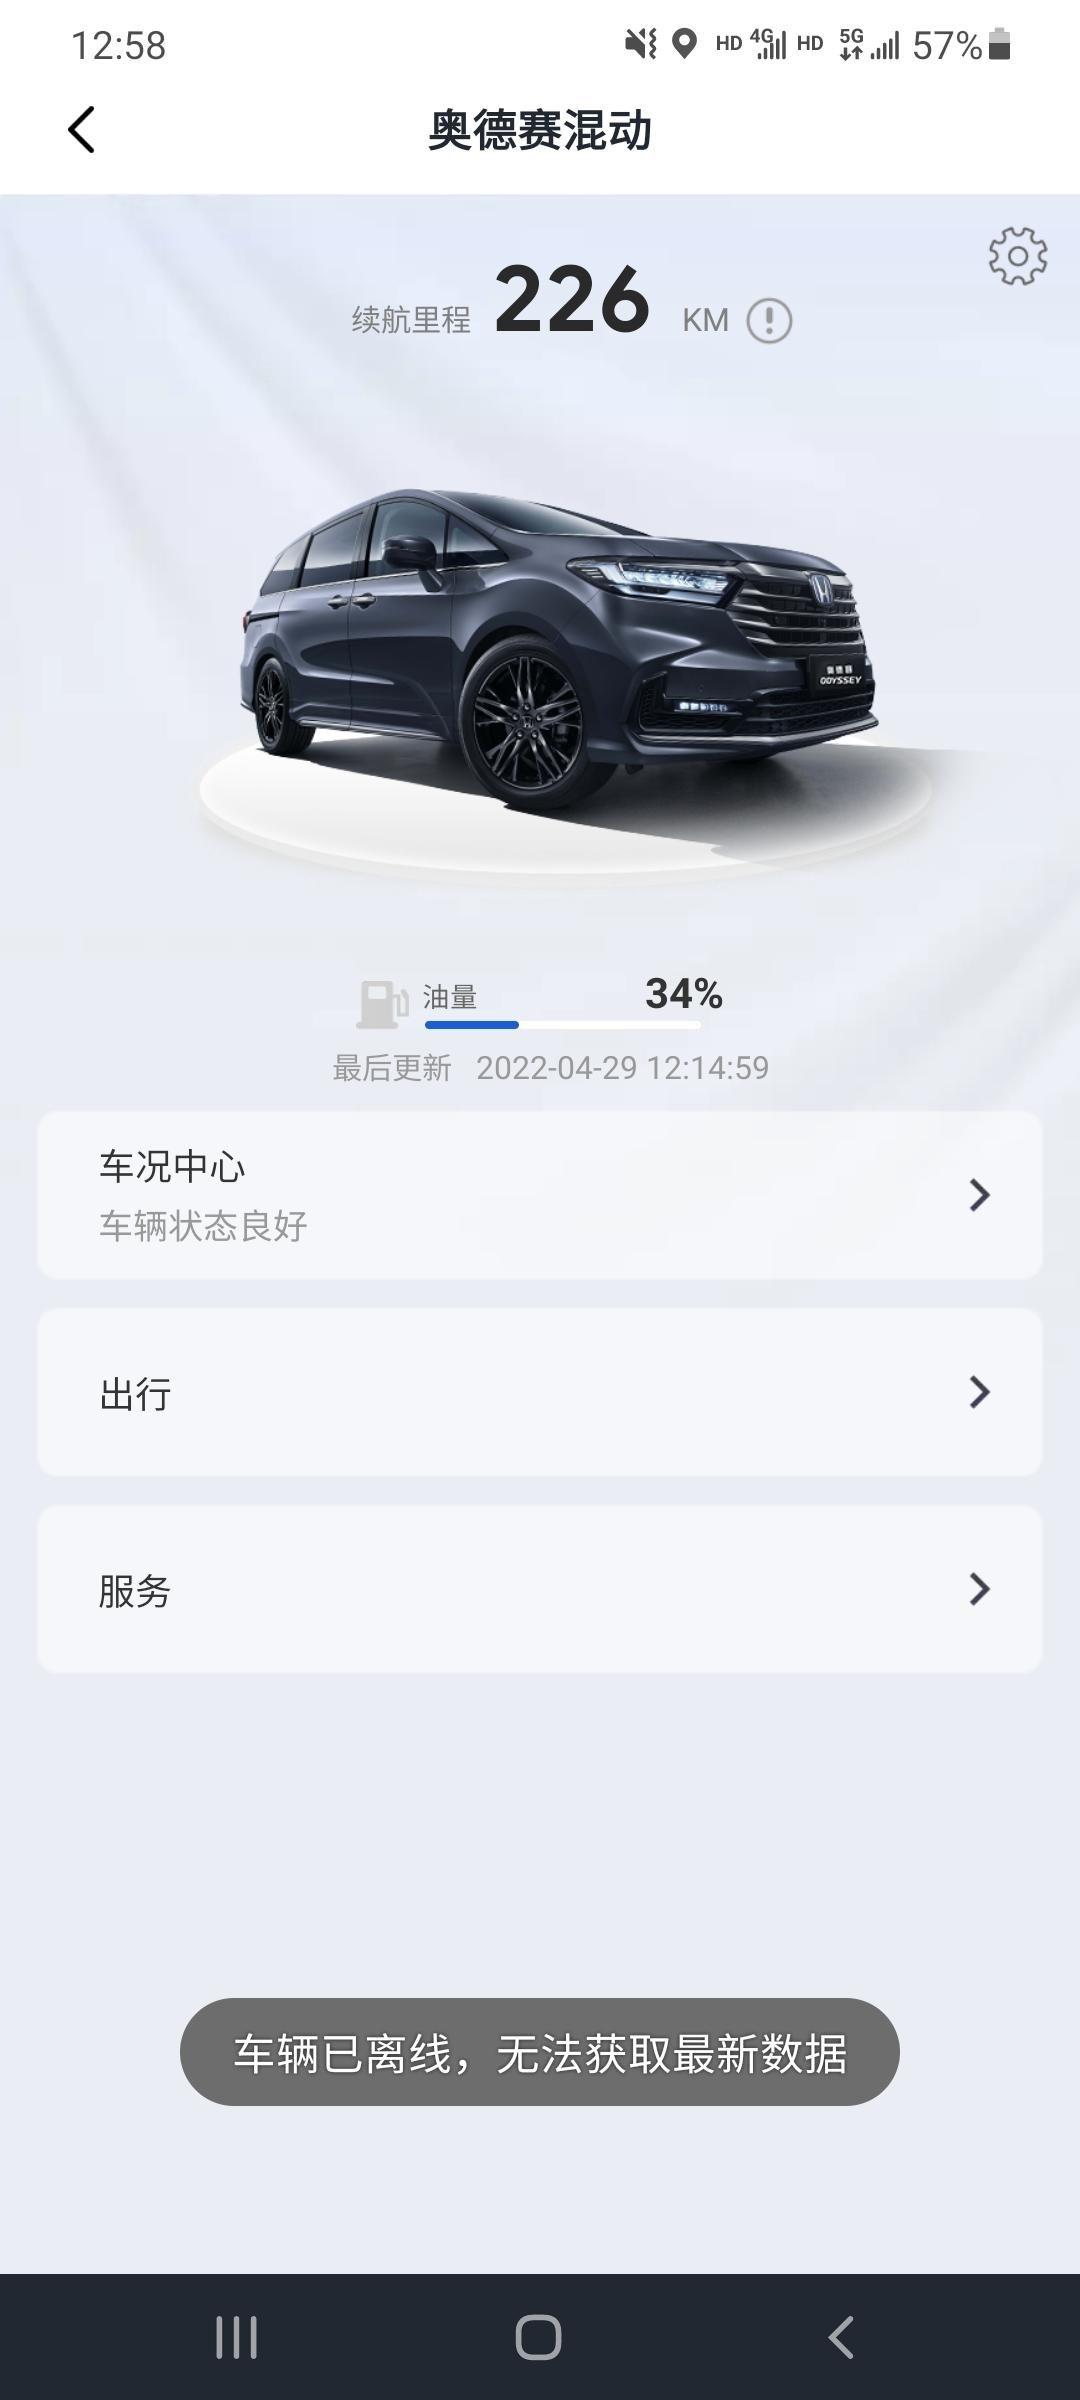 本田奥德赛 广汽本田app爱车模块，总是显示离线状态，没有锁车什么的功能，怎么回事啊